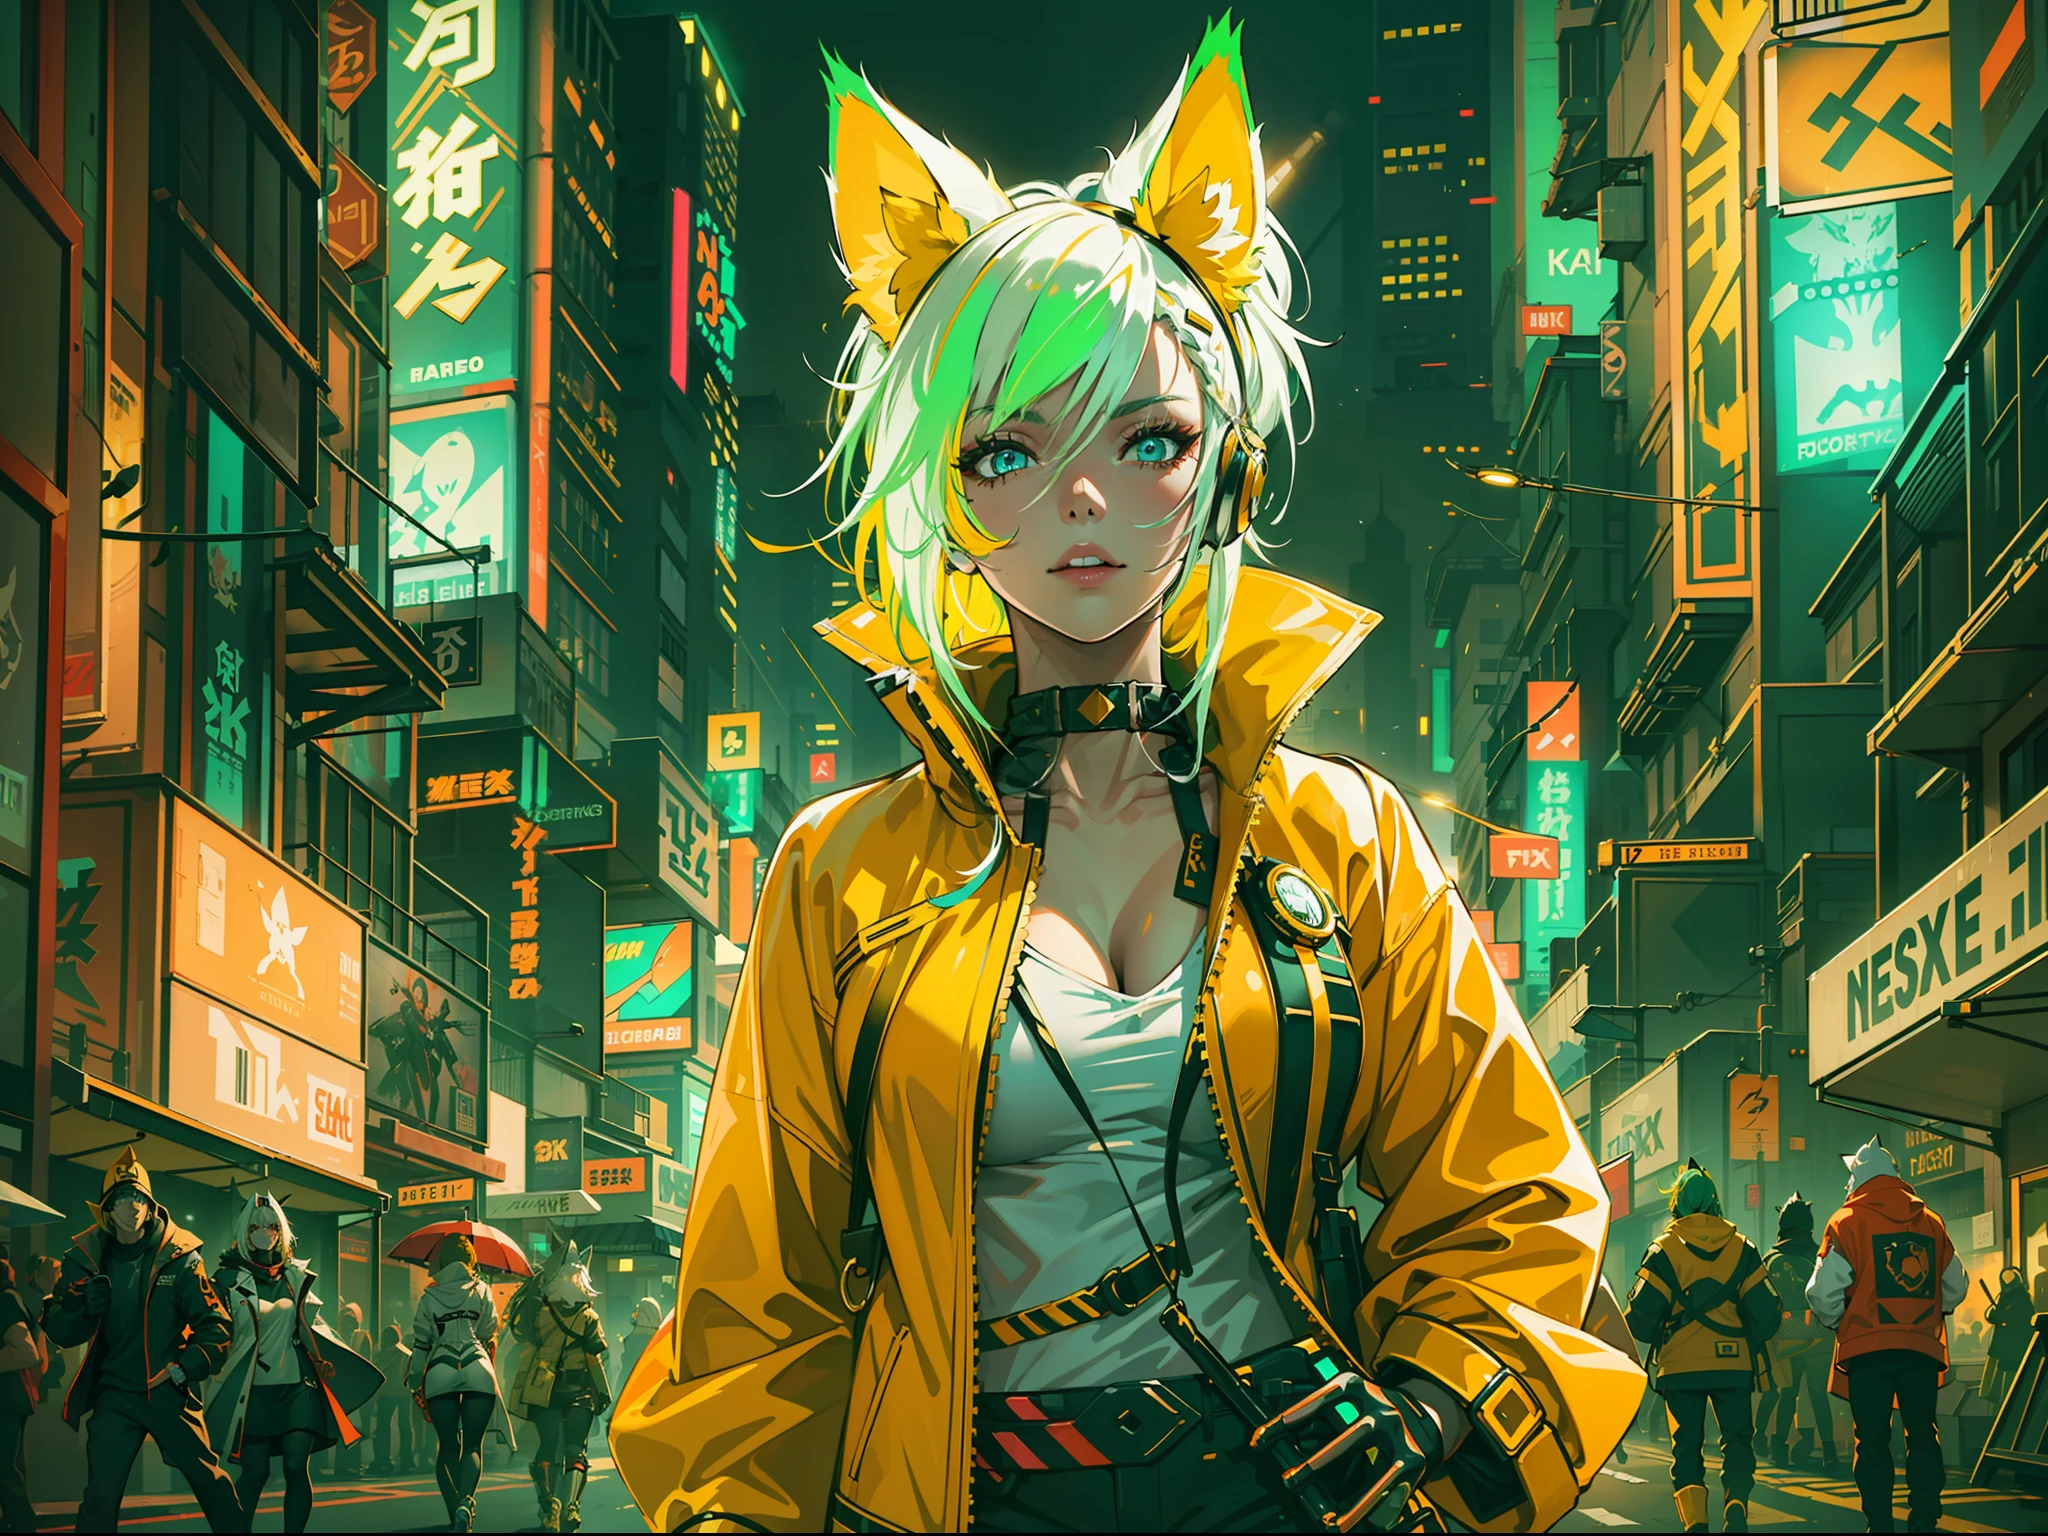 "Eine Frau mit leuchtend neongelbem Haar, geschmückt mit künstlichen Fuchsohren und mechanischen Fuchsschwänzen, in futuristischer weißer Kleidung mit Neon-Highlights. Sie schlendert durch die belebten Straßen der Cyberpunk-Stadt."